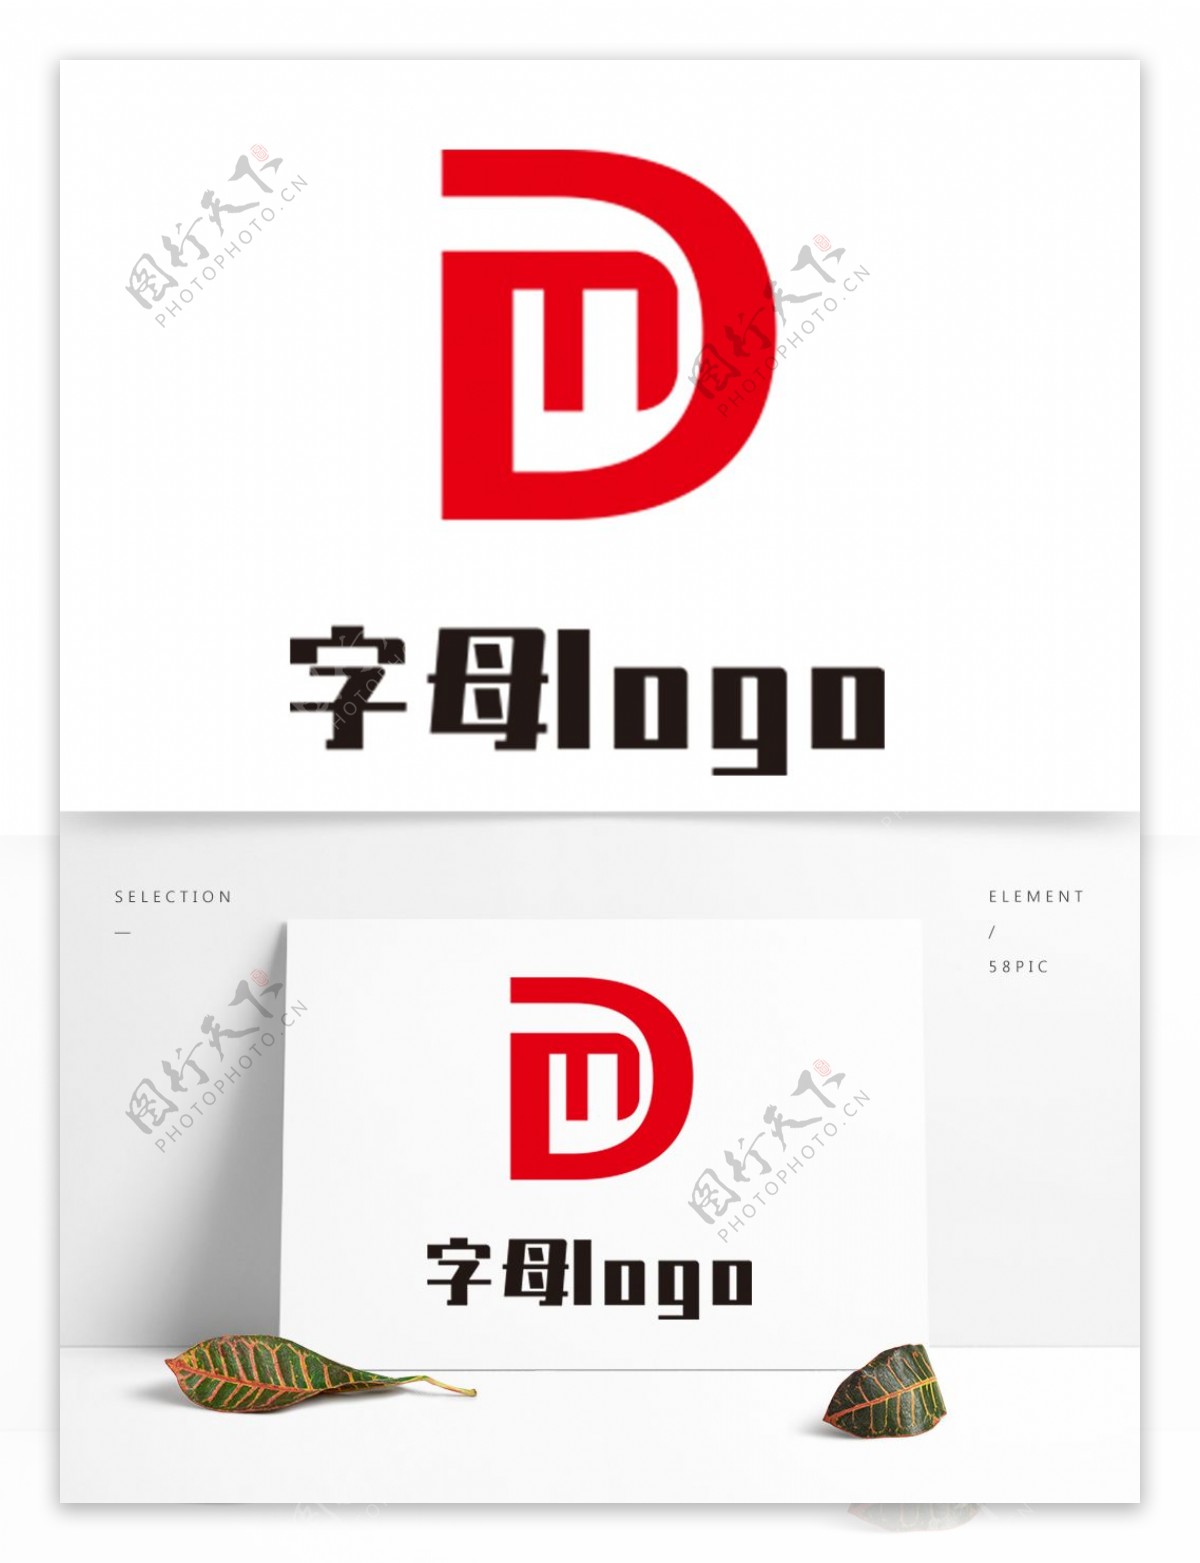 字母DM设计logo